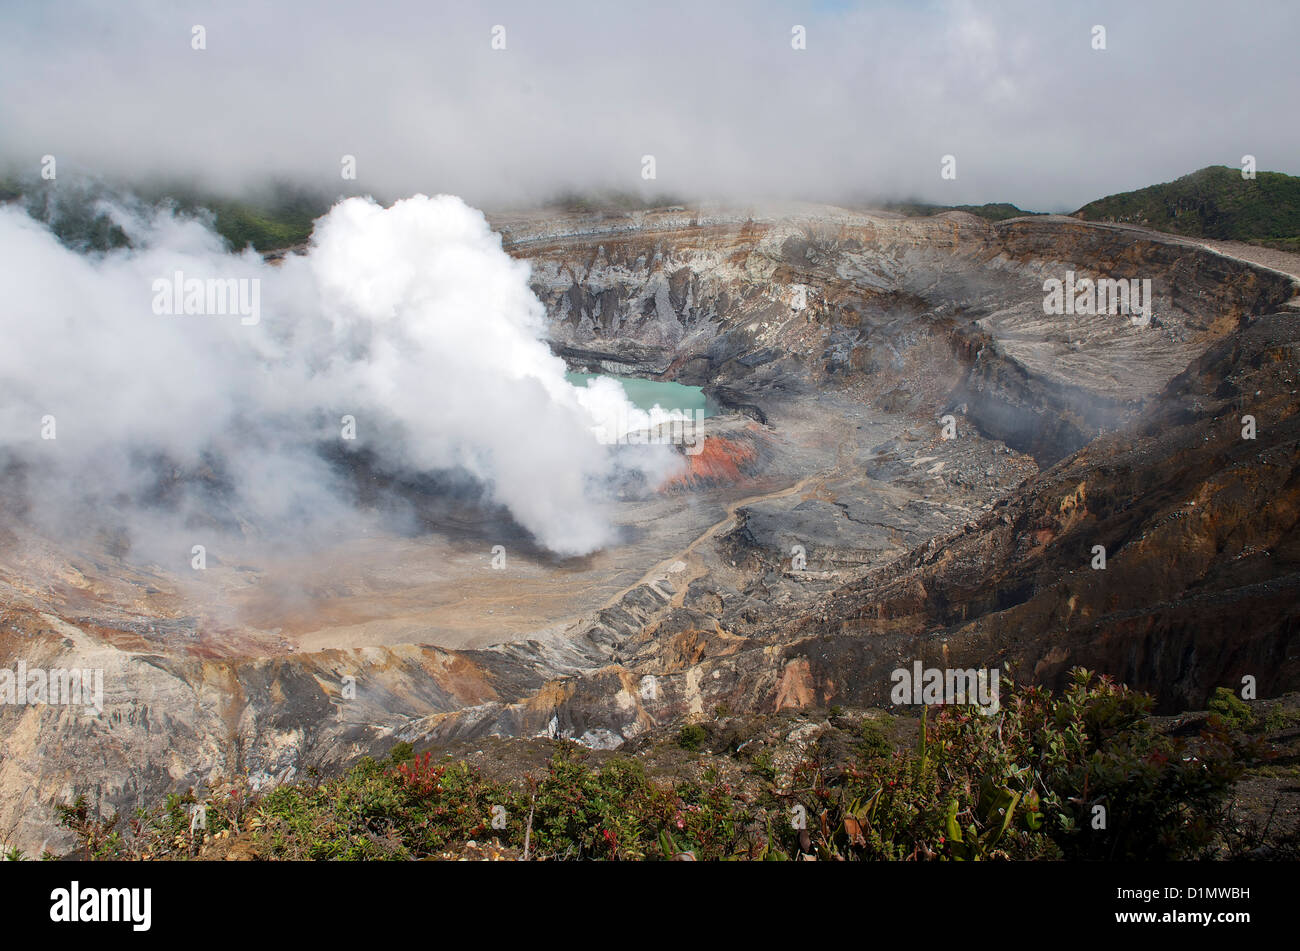 Acido solforico emissione di gas cloud passando dal cratere attivo nel vulcano di Poas National Park, provincia di Alajuela in Costa Rica. Foto Stock